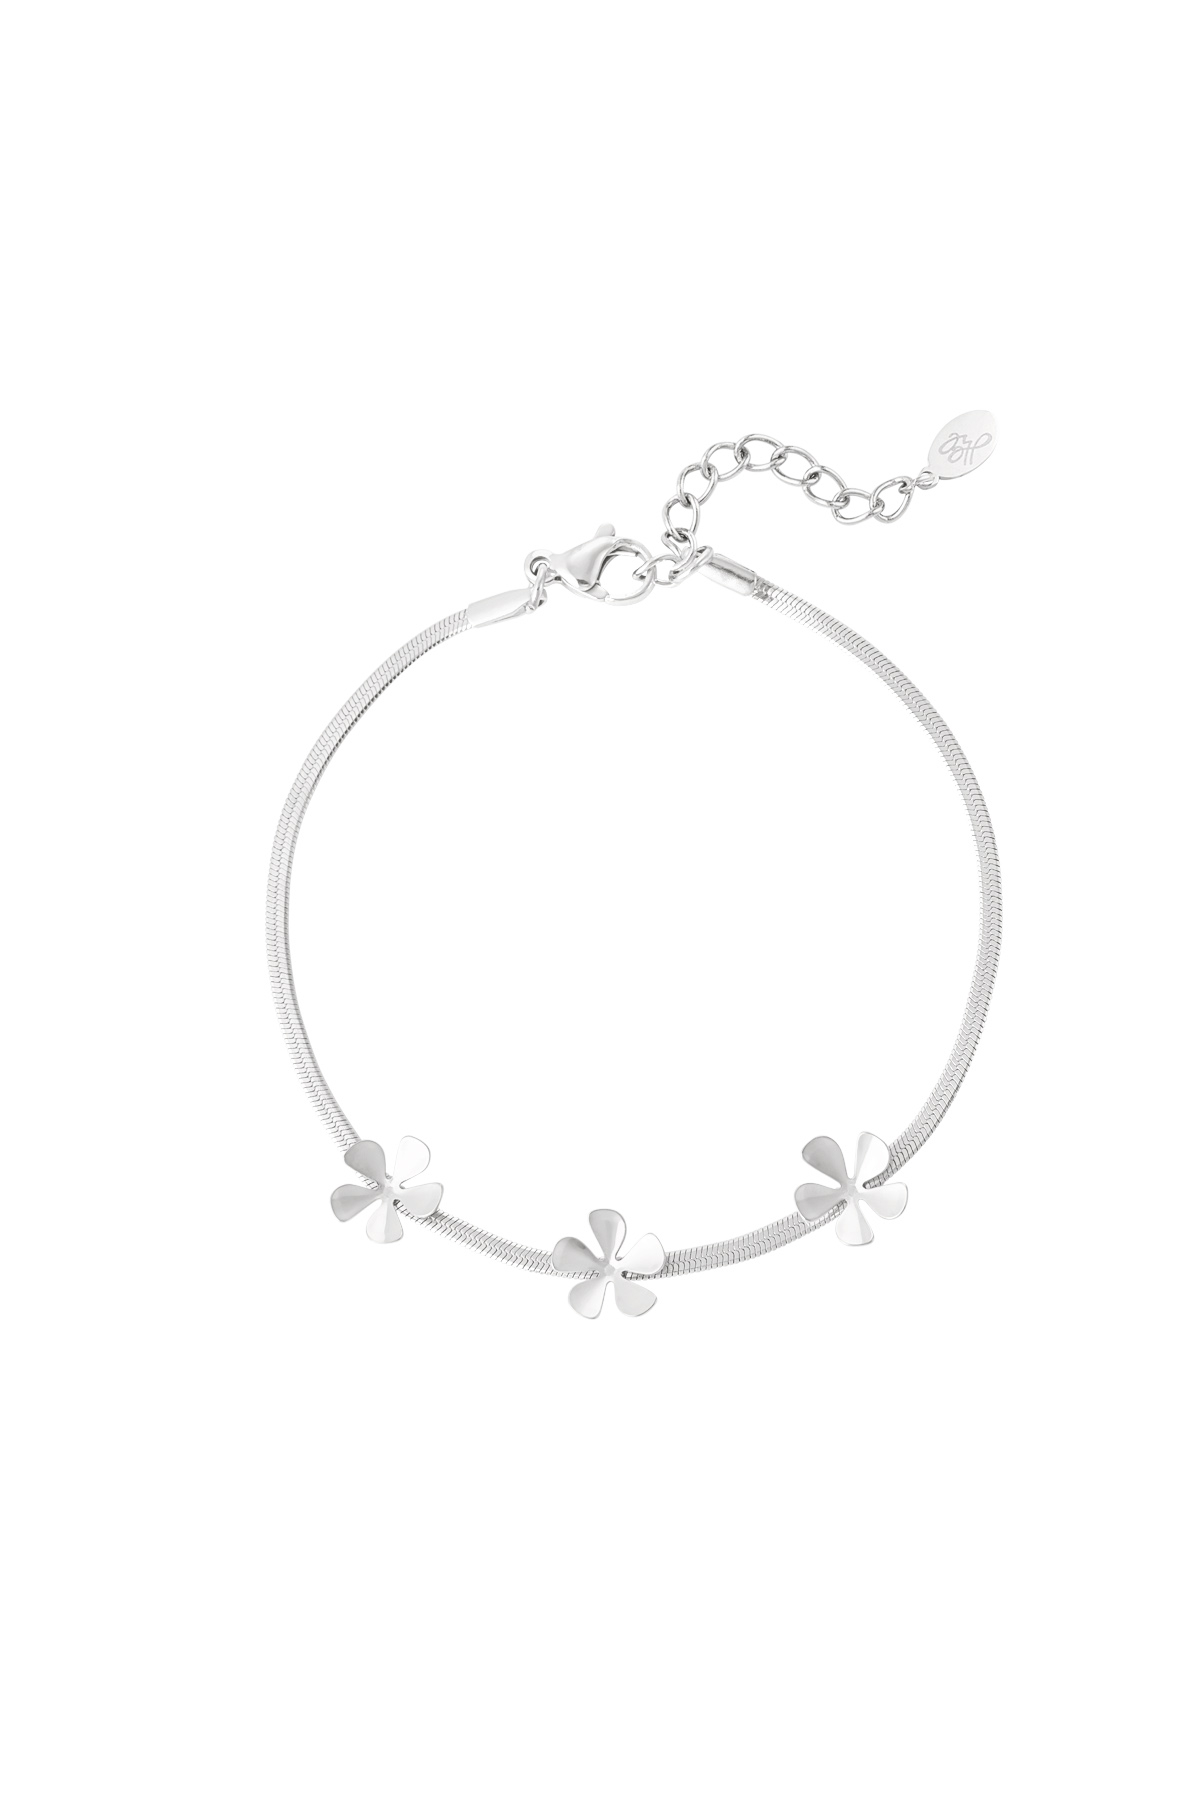 Bracelet 3 basic flowers - Silver